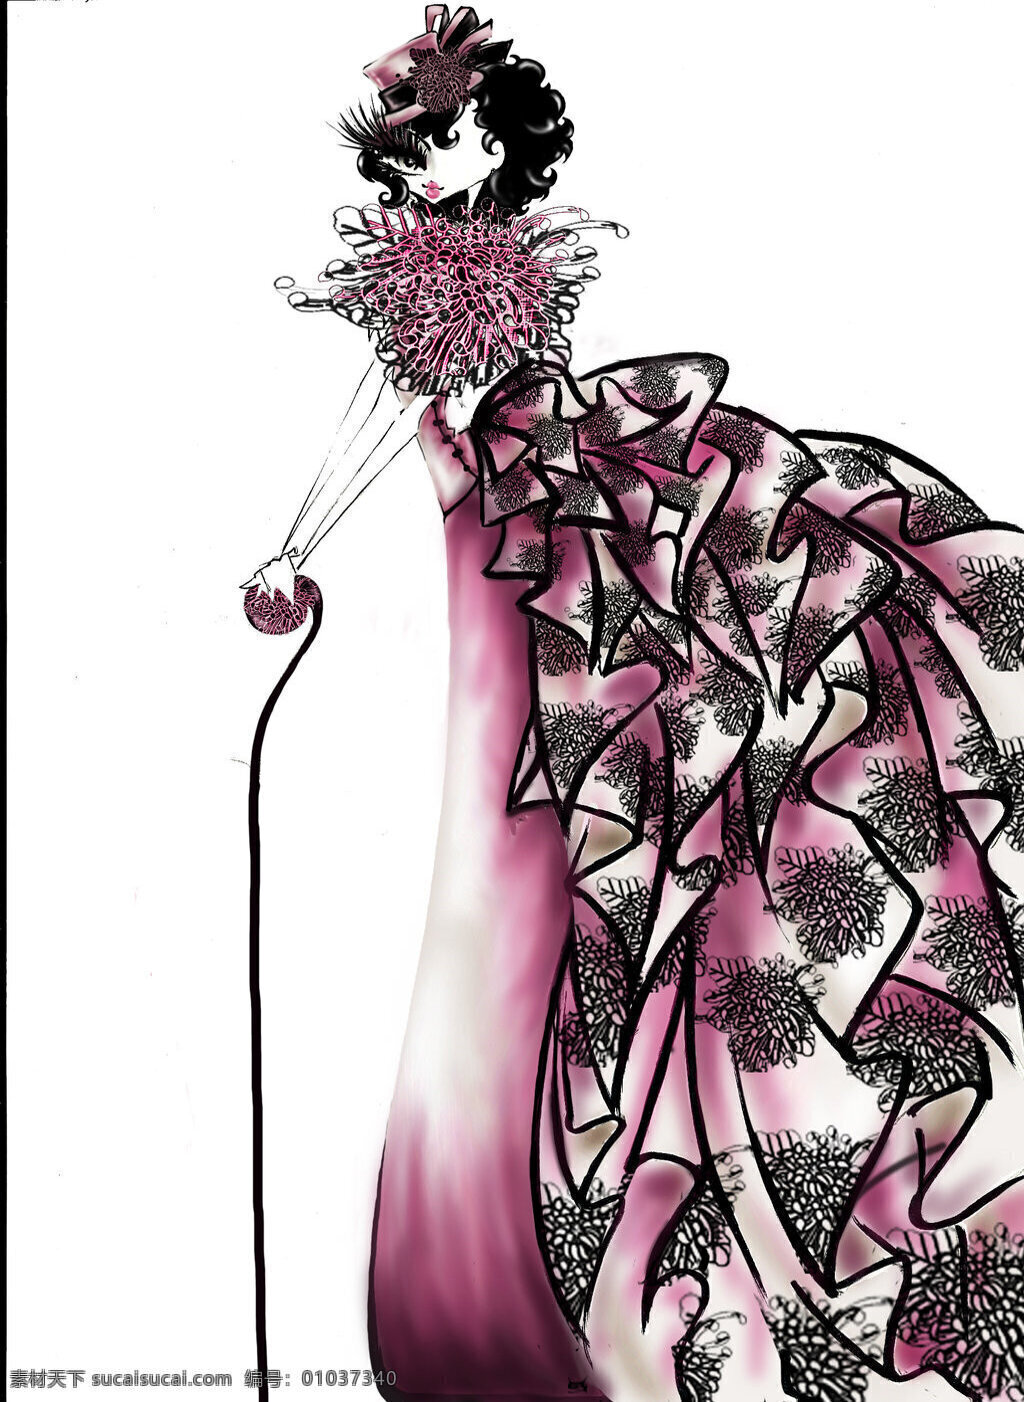 紫色 花纹 连衣裙 设计图 服装设计 时尚女装 职业女装 职业装 女装设计 效果图 短裙 衬衫 服装 服装效果图 礼服